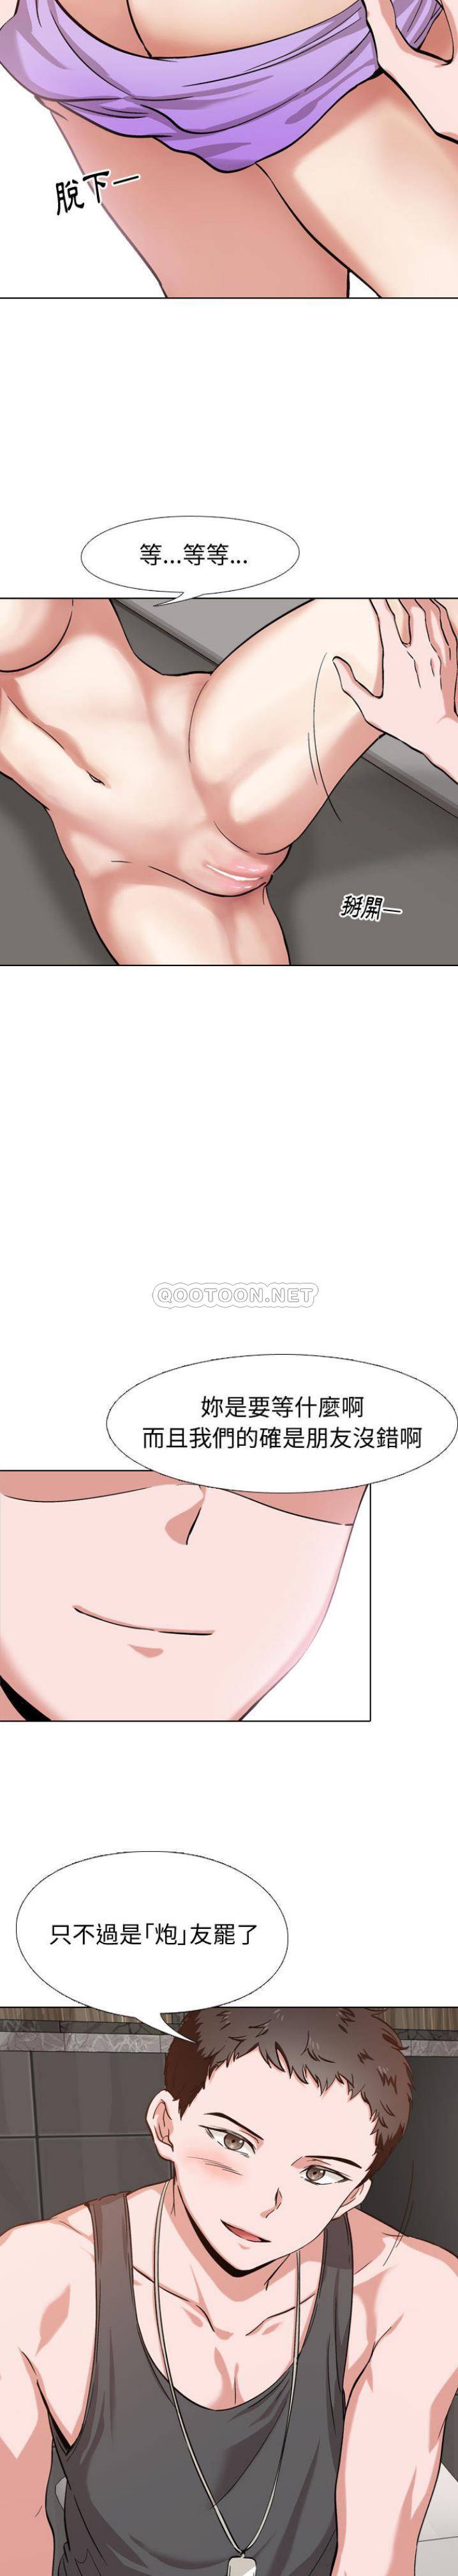 韩国污漫画 不單純友情 第2话 20